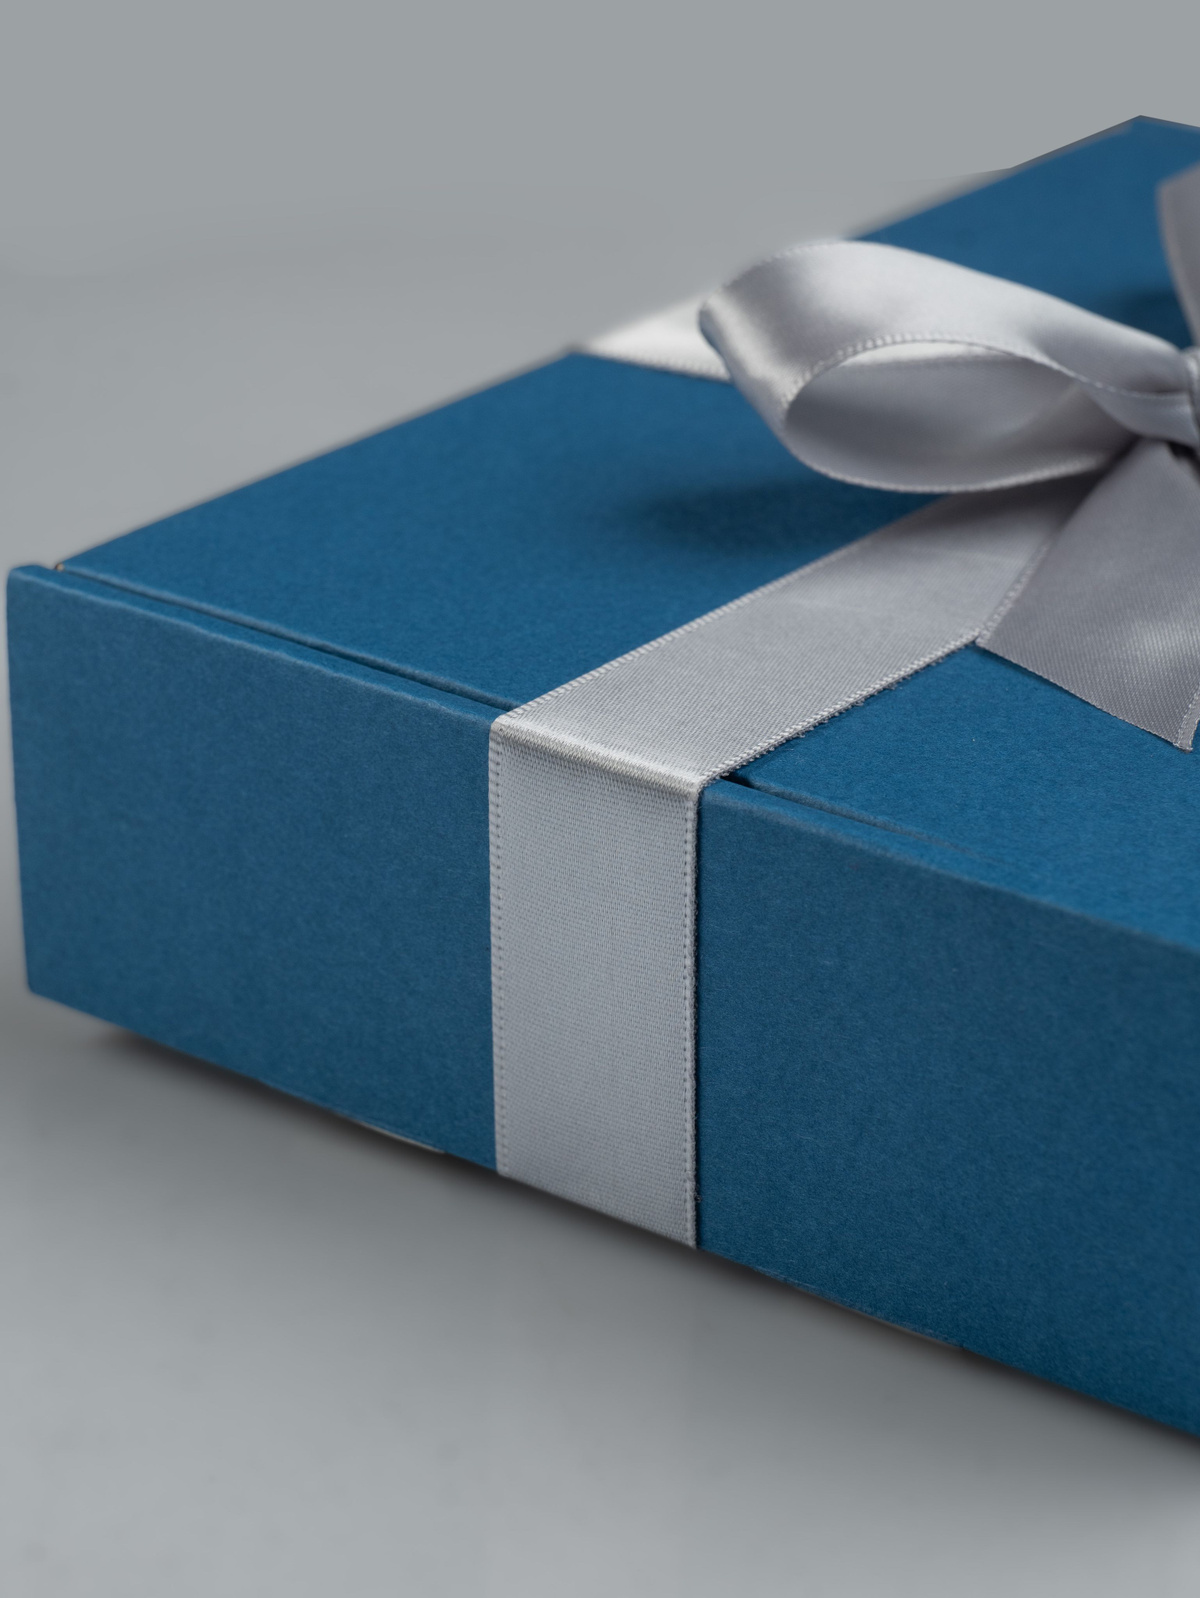 Такой подарок не только порадует получателя, но и станет прекрасным украшением для любого праздника или события. Он идеально подойдет для Нового года, дня рождения, свадьбы, юбилея или любого другого торжества. В комплект входит одна коробка, которая имеет размеры 12x10x3 см. Вы можете выбрать подходящую наклейку для каждой категории людей и сделать подарок еще более индивидуальным.